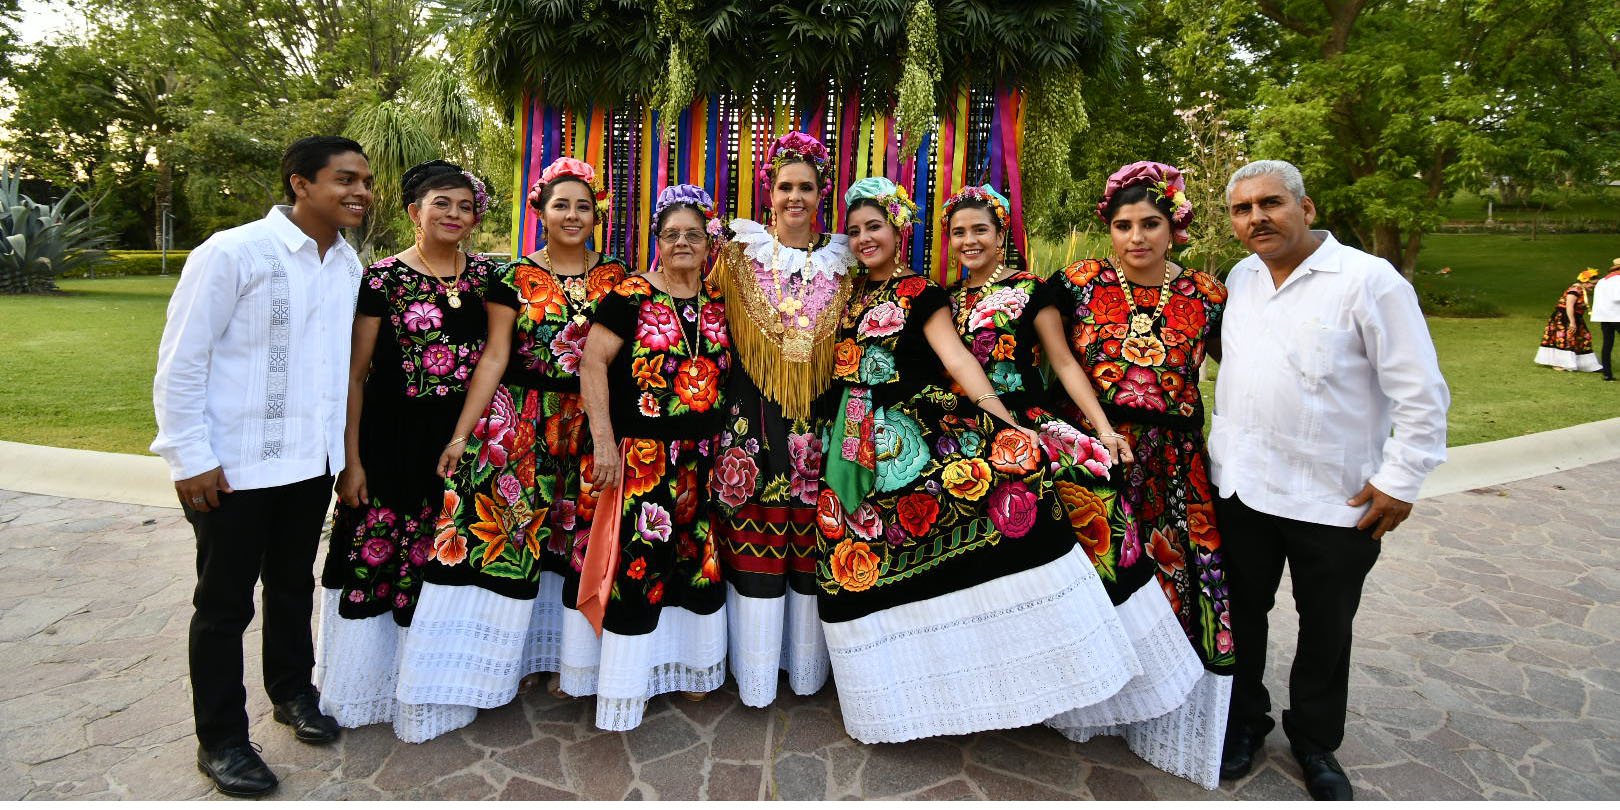 Mariza Ordaz cumple 50 años y la celebran con sones istmeños | El Imparcial de Oaxaca